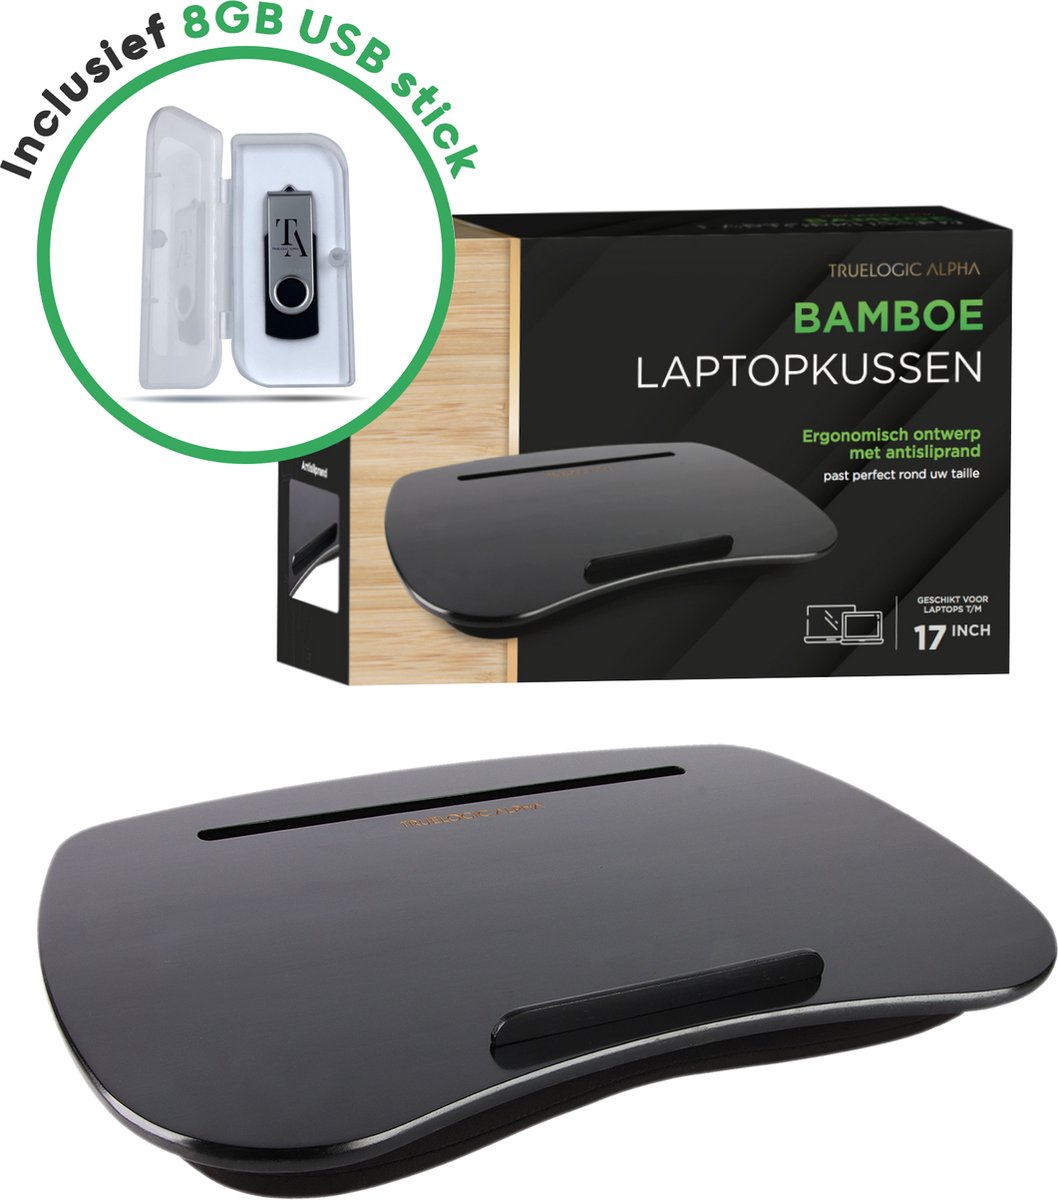 TrueLogic Alpha Bamboe laptopkussen - Inclusief 8GB USB stick - Laptopstandaard - Voor laptops t/m 17 inch - Bedtafel - Schootkussen - Zwart - Cadeautip